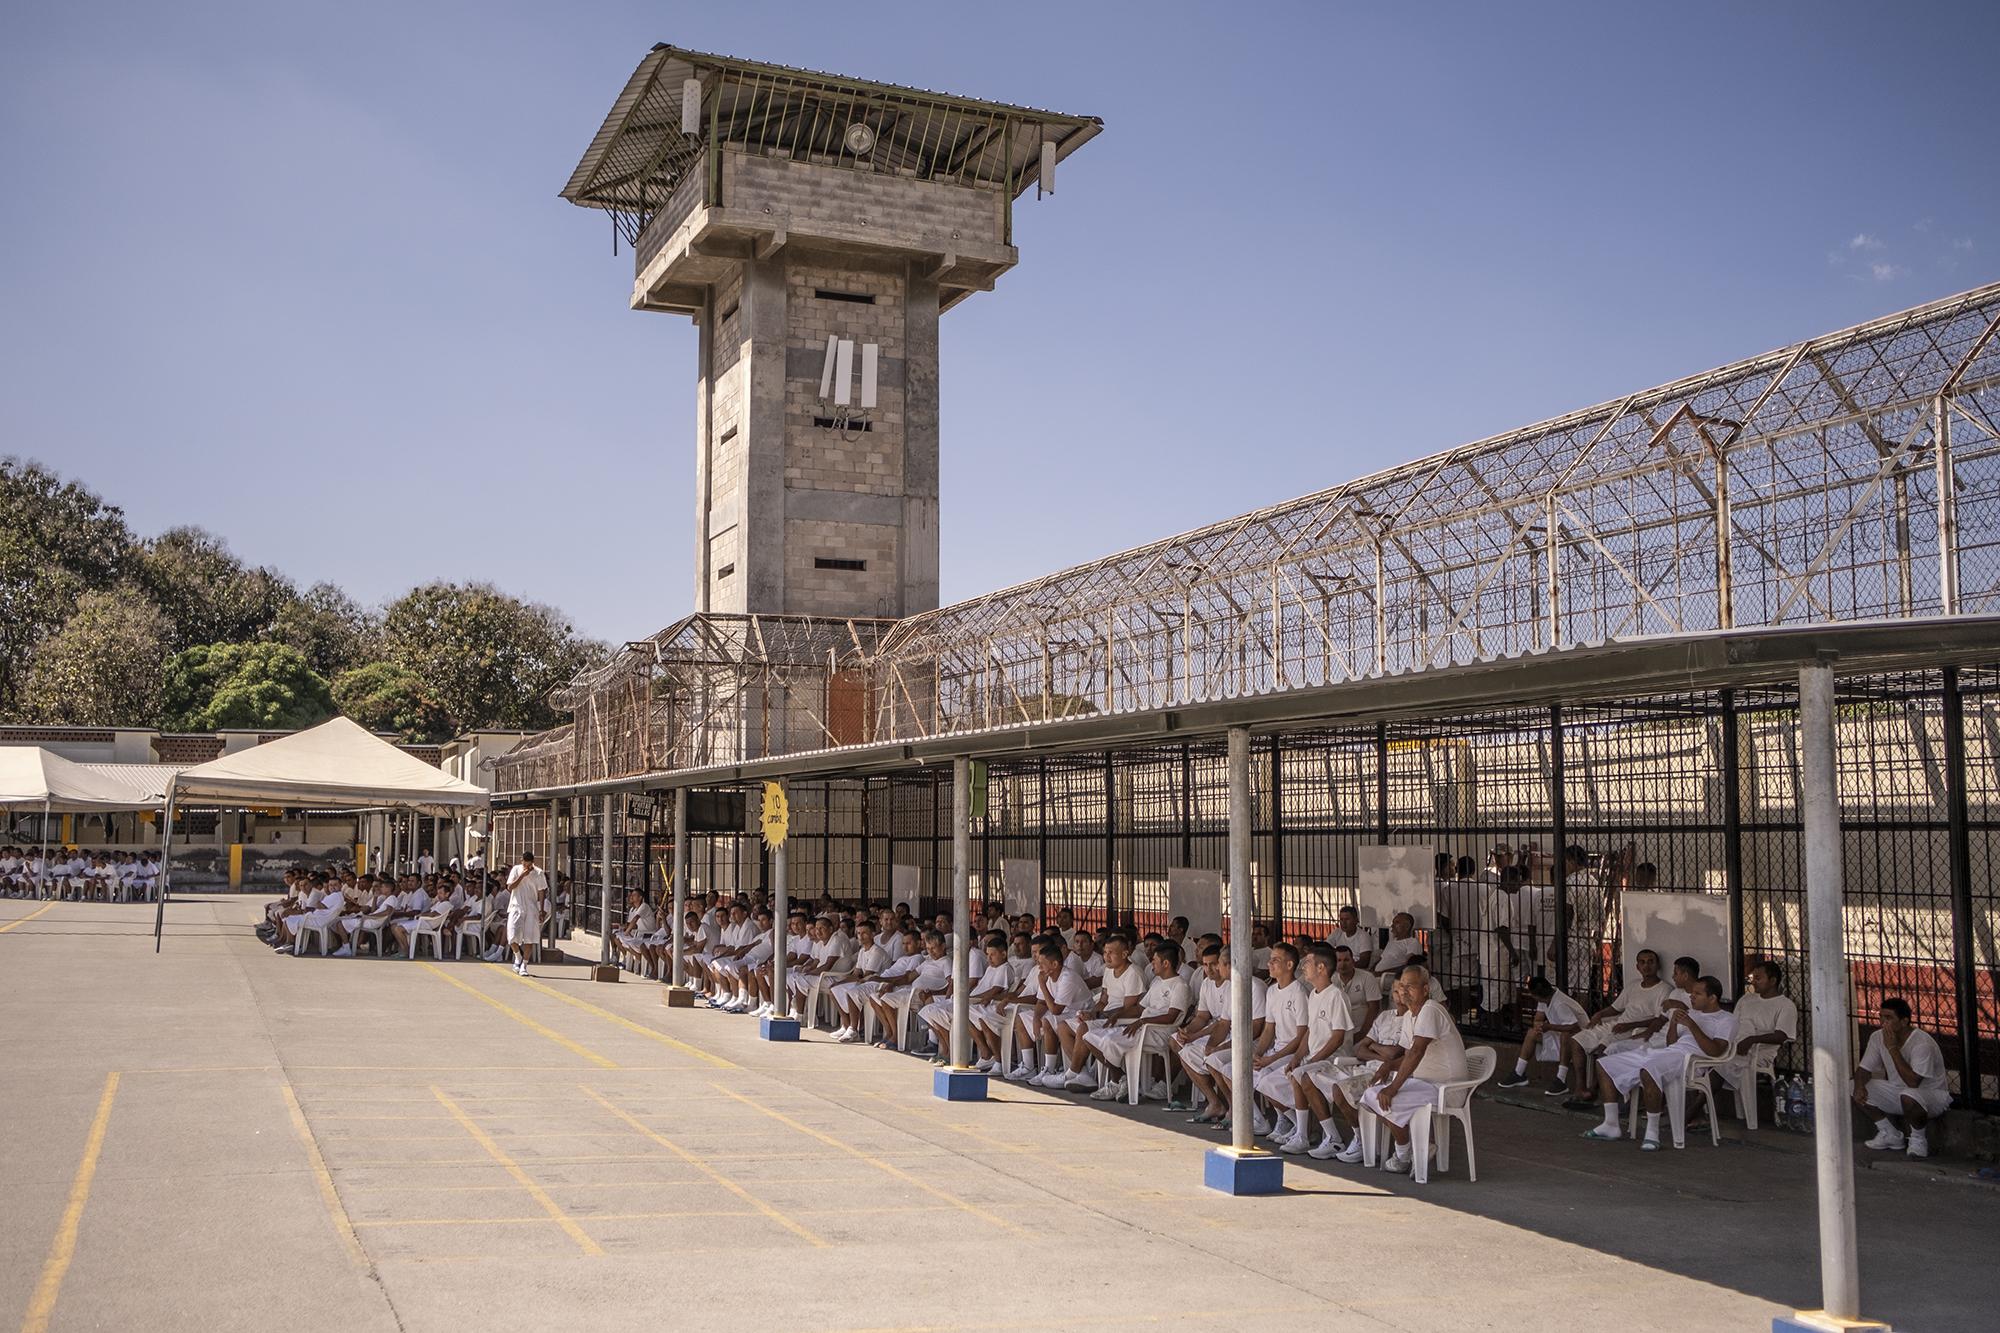 La torre que separa los sectores 2 y 3 es uno de los elementos que identifican Mariona, la cárcel que más privados de libertad alberga de todo el sistema penitenciario de El Salvador. Foto Carlos Barrera.